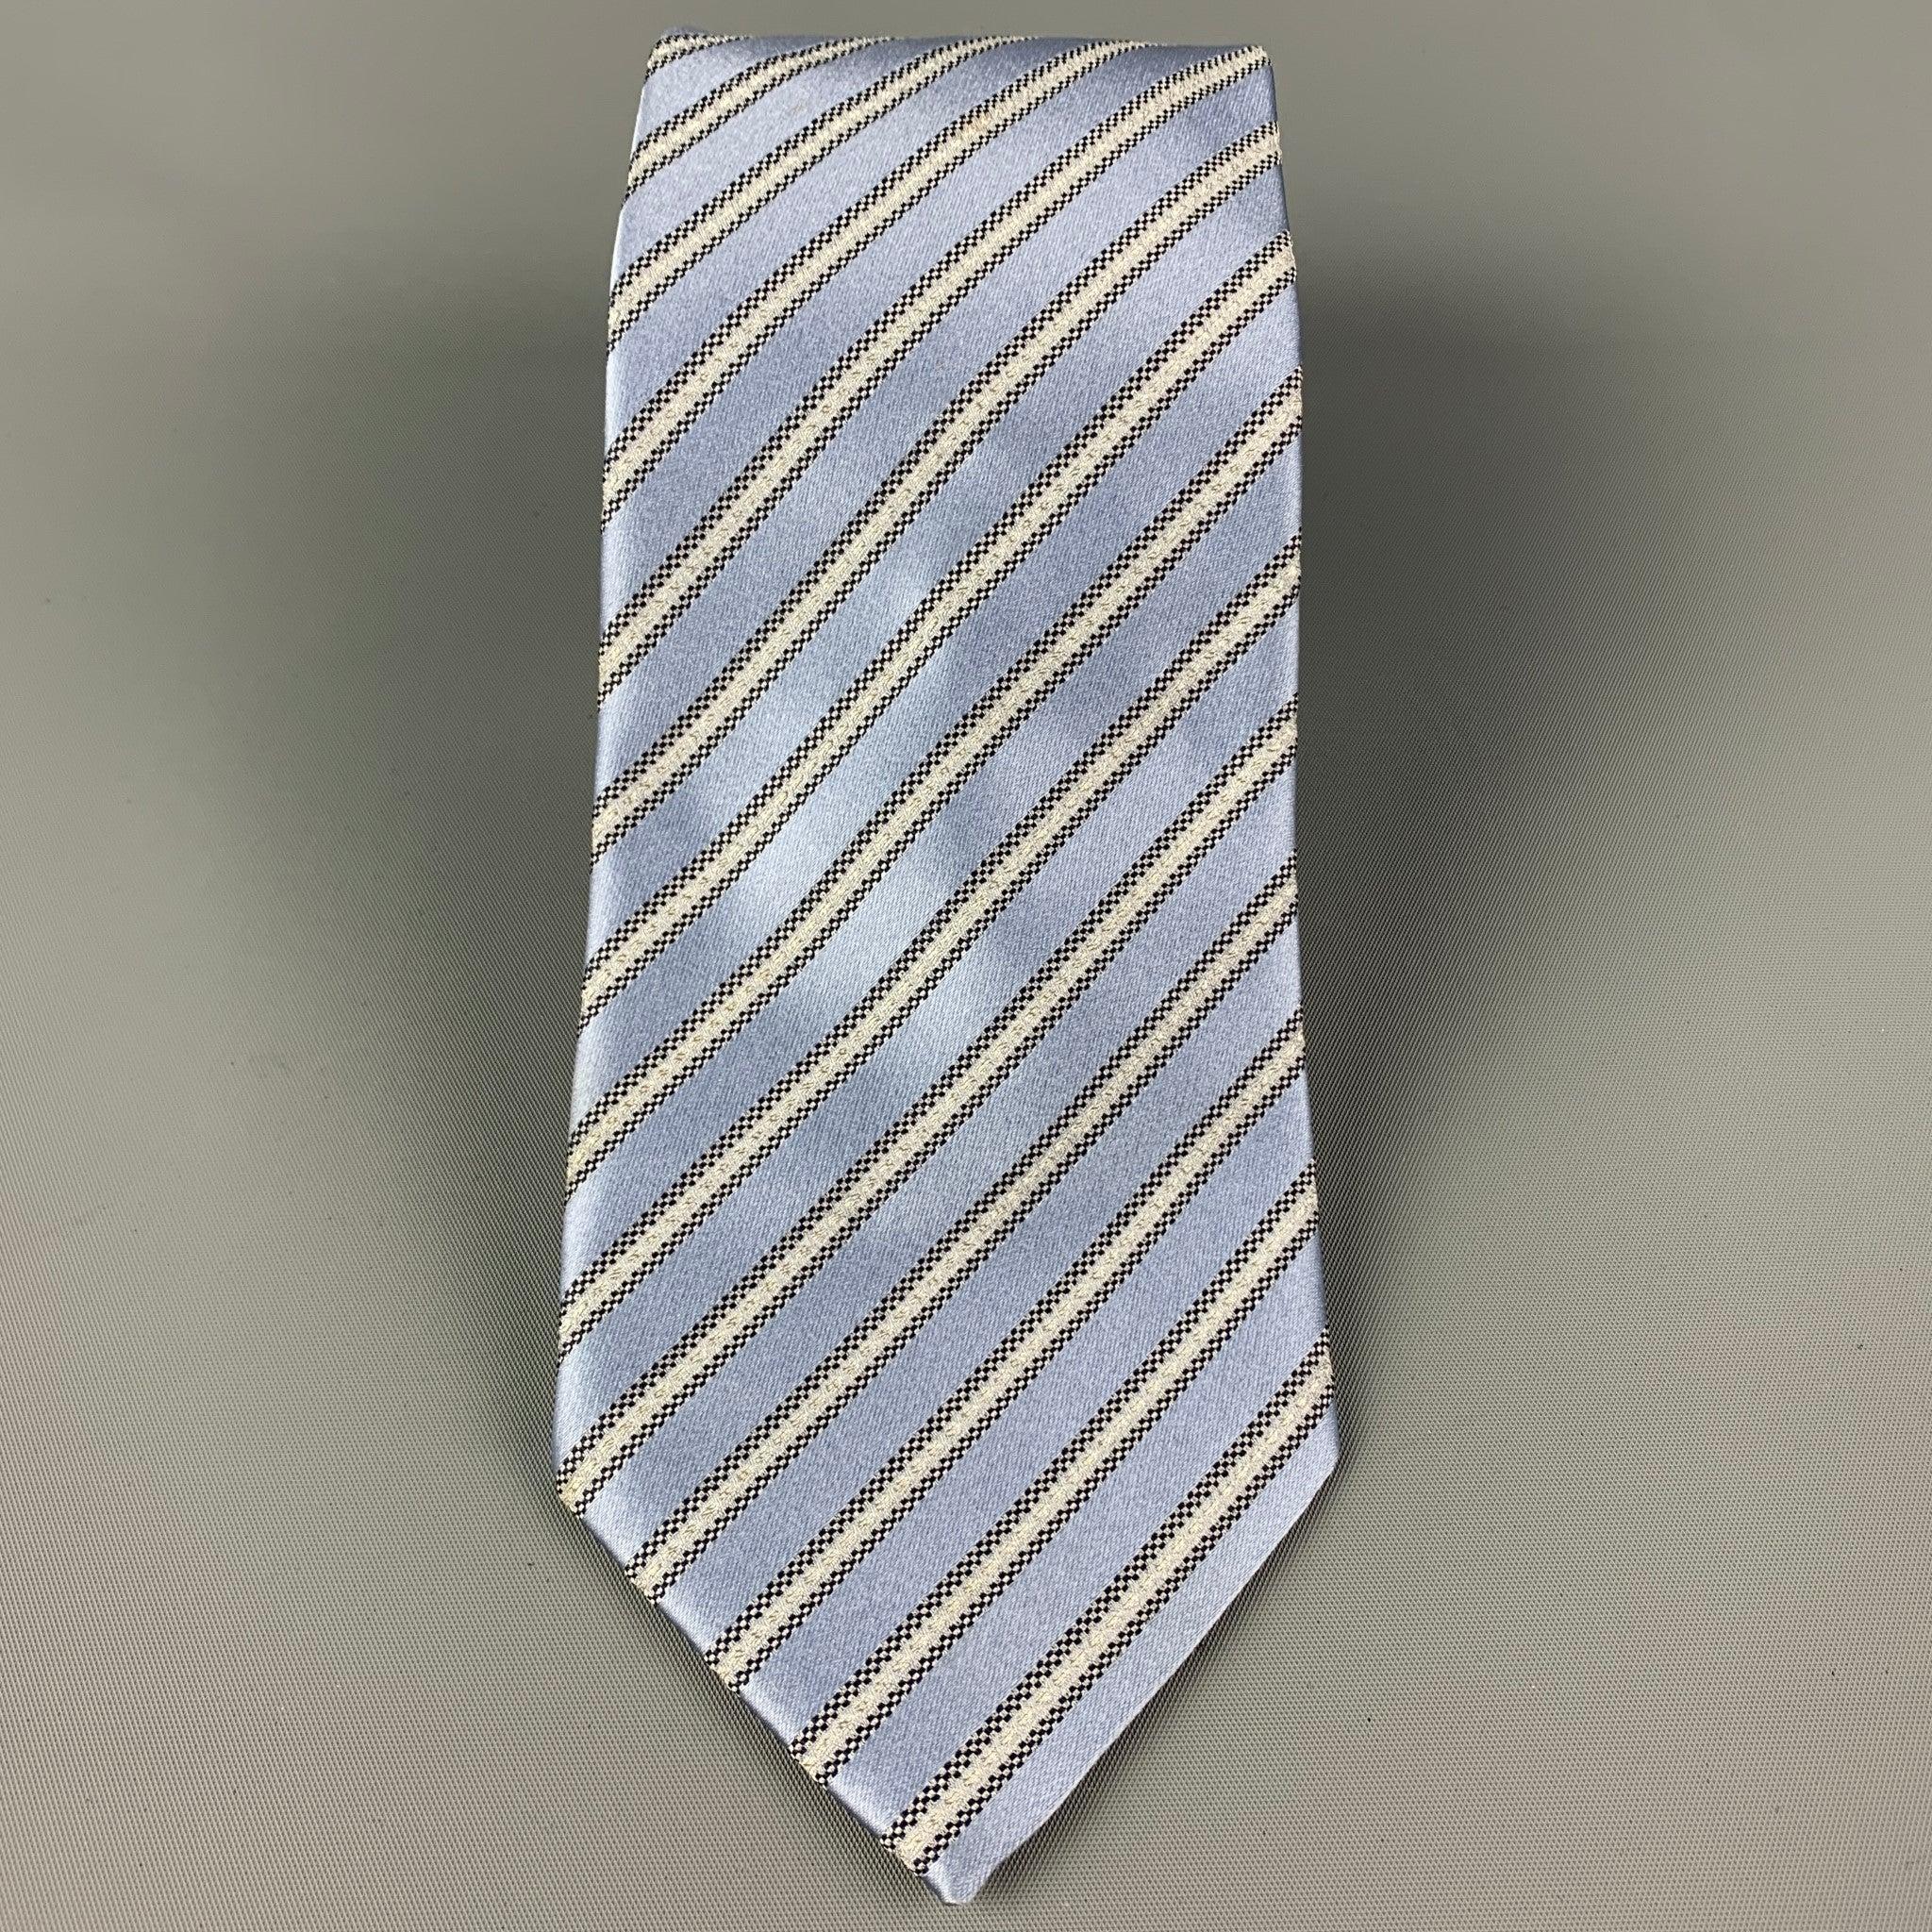 ERMENEGILDO ZEGNA
Die Krawatte ist aus einer hellblauen und silbernen Seidenmischung mit einem ganzflächigen Streifendruck. Hergestellt in Italien. Sehr guter gebrauchter Zustand. 

Abmessungen: 
  Breite: 3.5 Zoll  Länge: 61 Zoll 
  
  
 
Sui